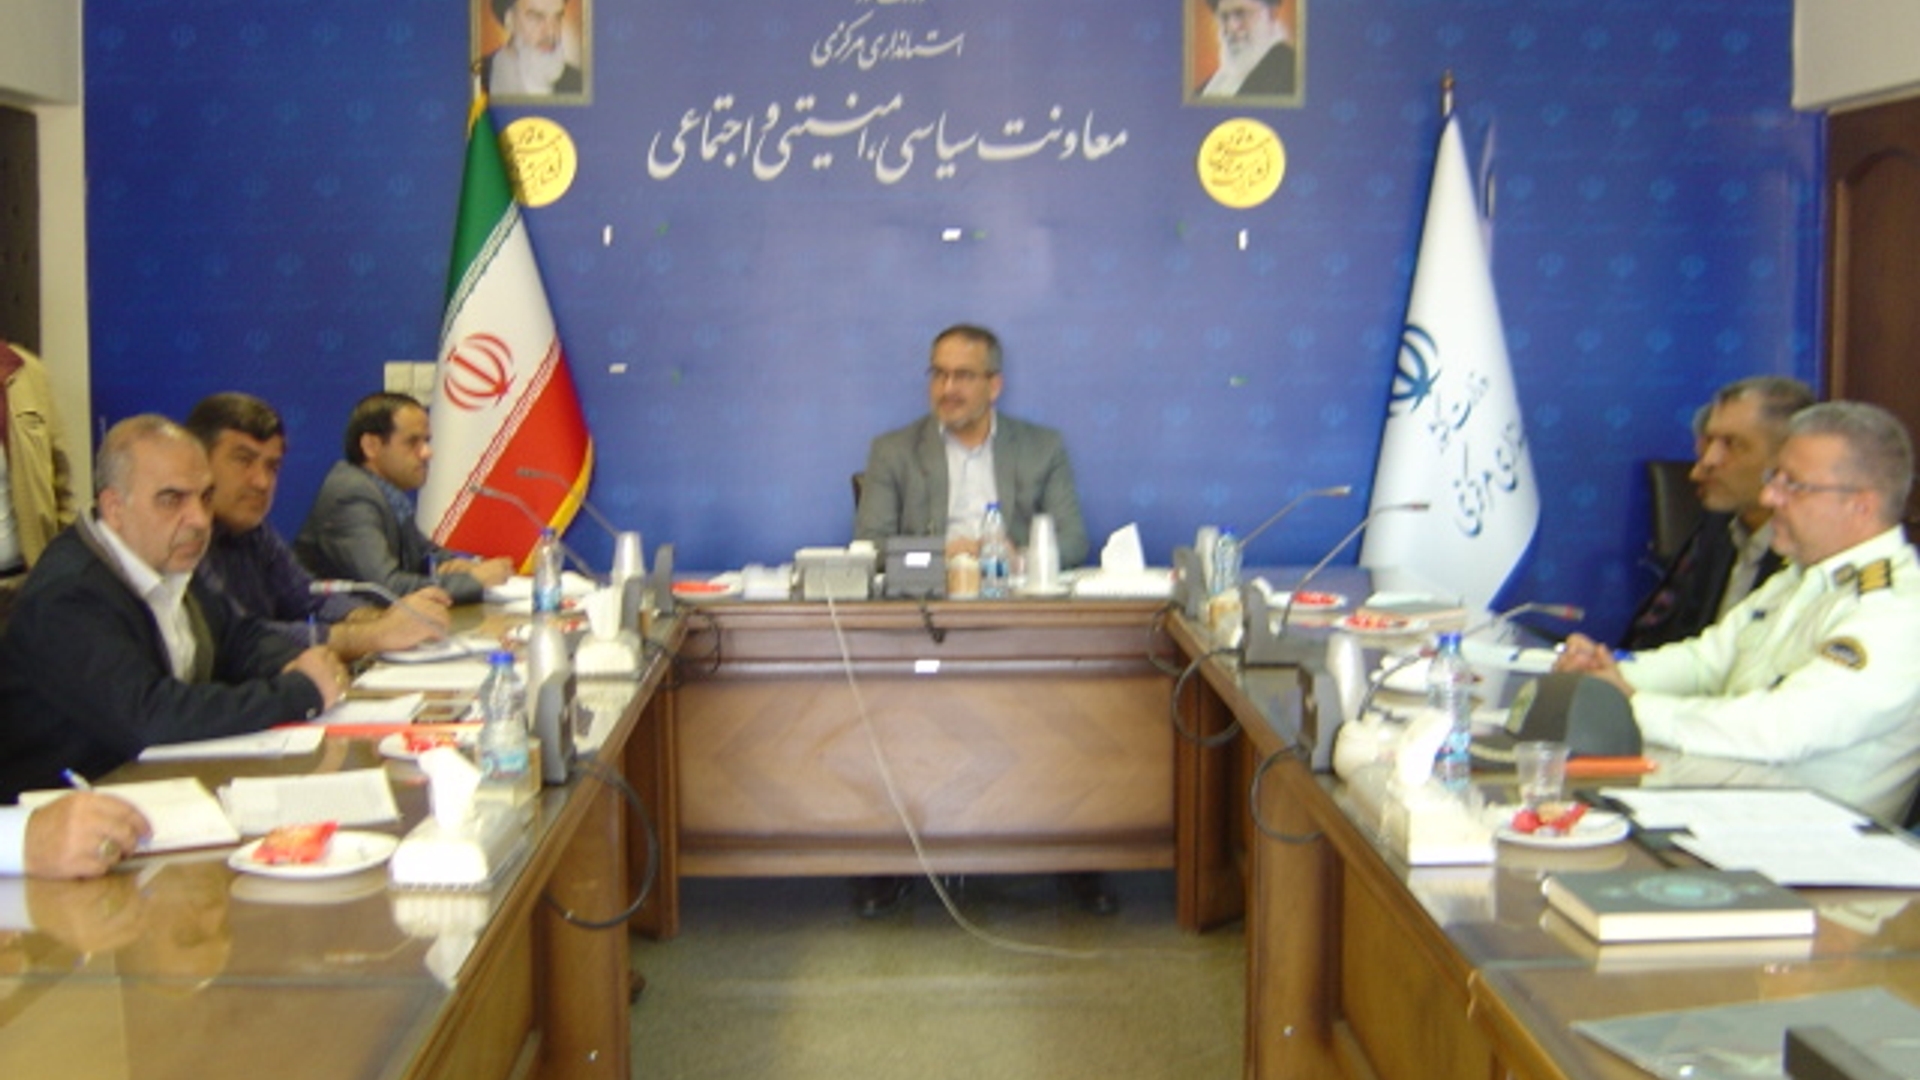 جلسه کمیسیون حفاظت از آزمون استاند ساعت 30-10 صبح روز شنبه مورخ 1-2-1403 به ریاست آقای رحیمی تبار سرپرست اداره کل امنیتی و انتظامی برگزار گردید.